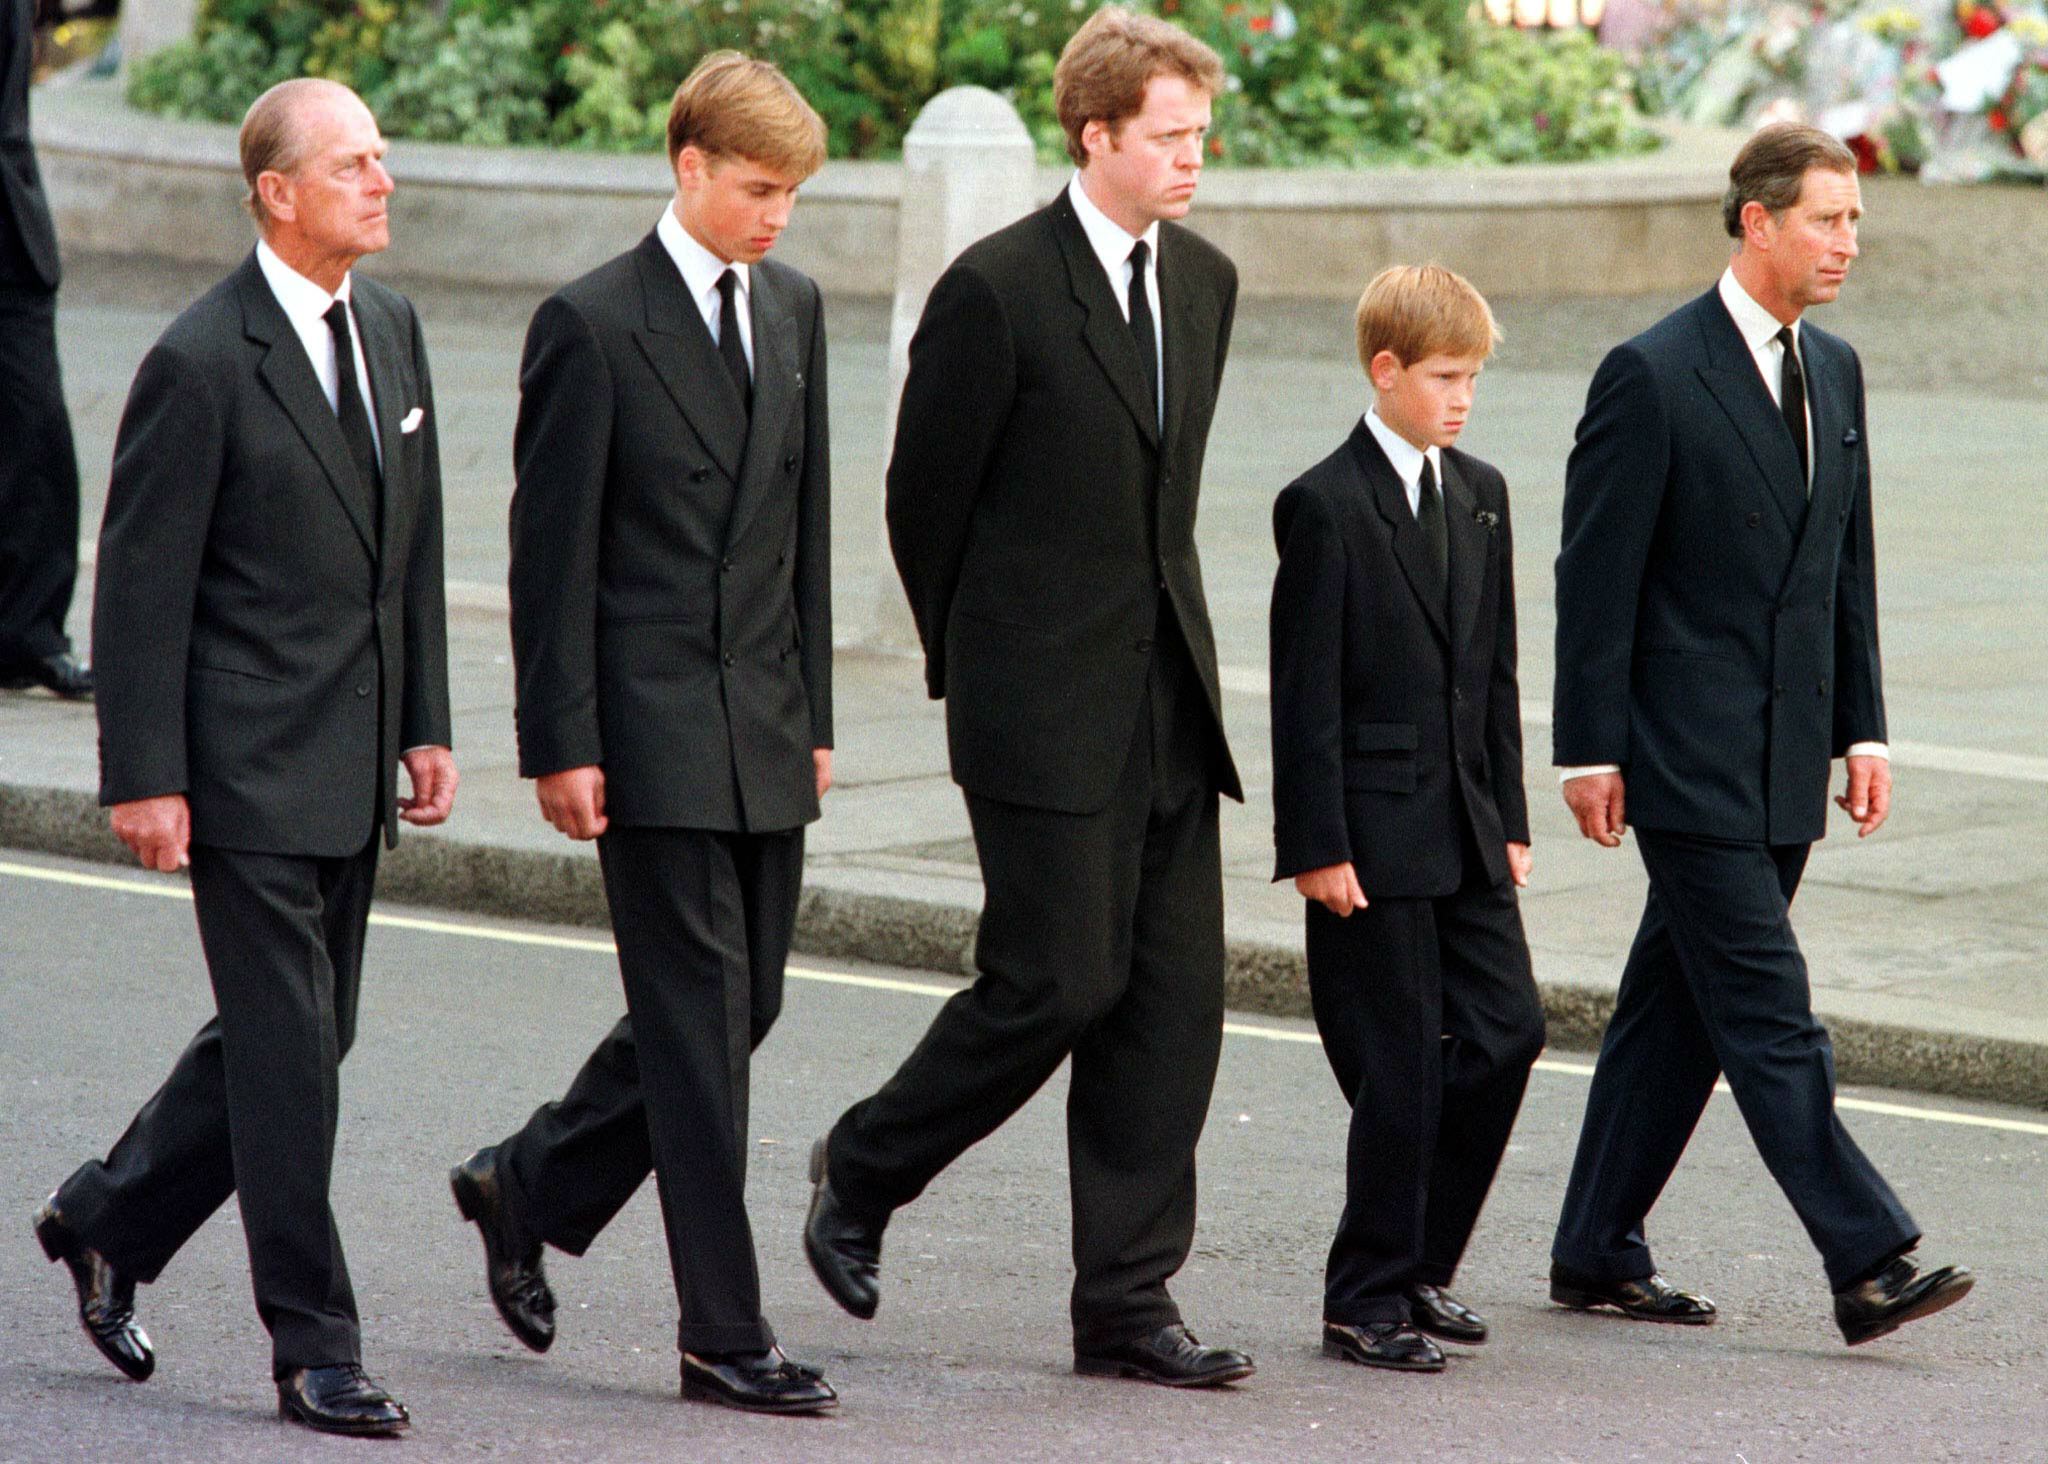 Le duc d'Édimbourg, le prince William, le comte Spencer, le prince Harry et le prince Charles marchent à l'extérieur de l'abbaye de Westminster pendant les funérailles de Diana, princesse de Galles, le 06 septembre 1997 | Source : Getty Images